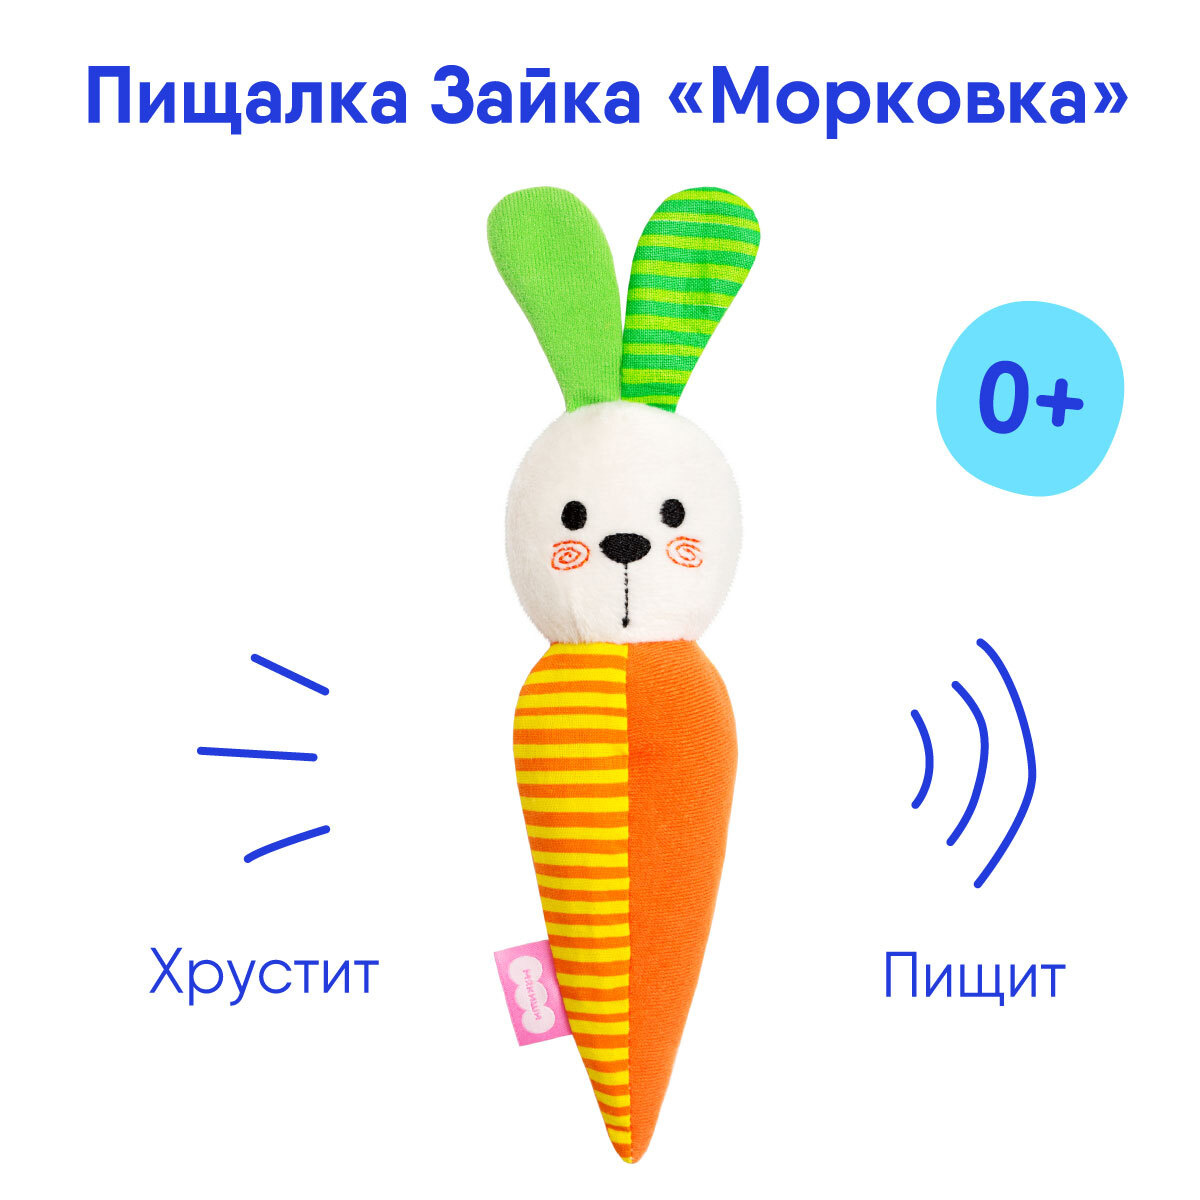 Игрушка Мякиши пищалка хрустелка Зайка Морковка мягкая погремушка для малышей до года, Россия 0+  #1